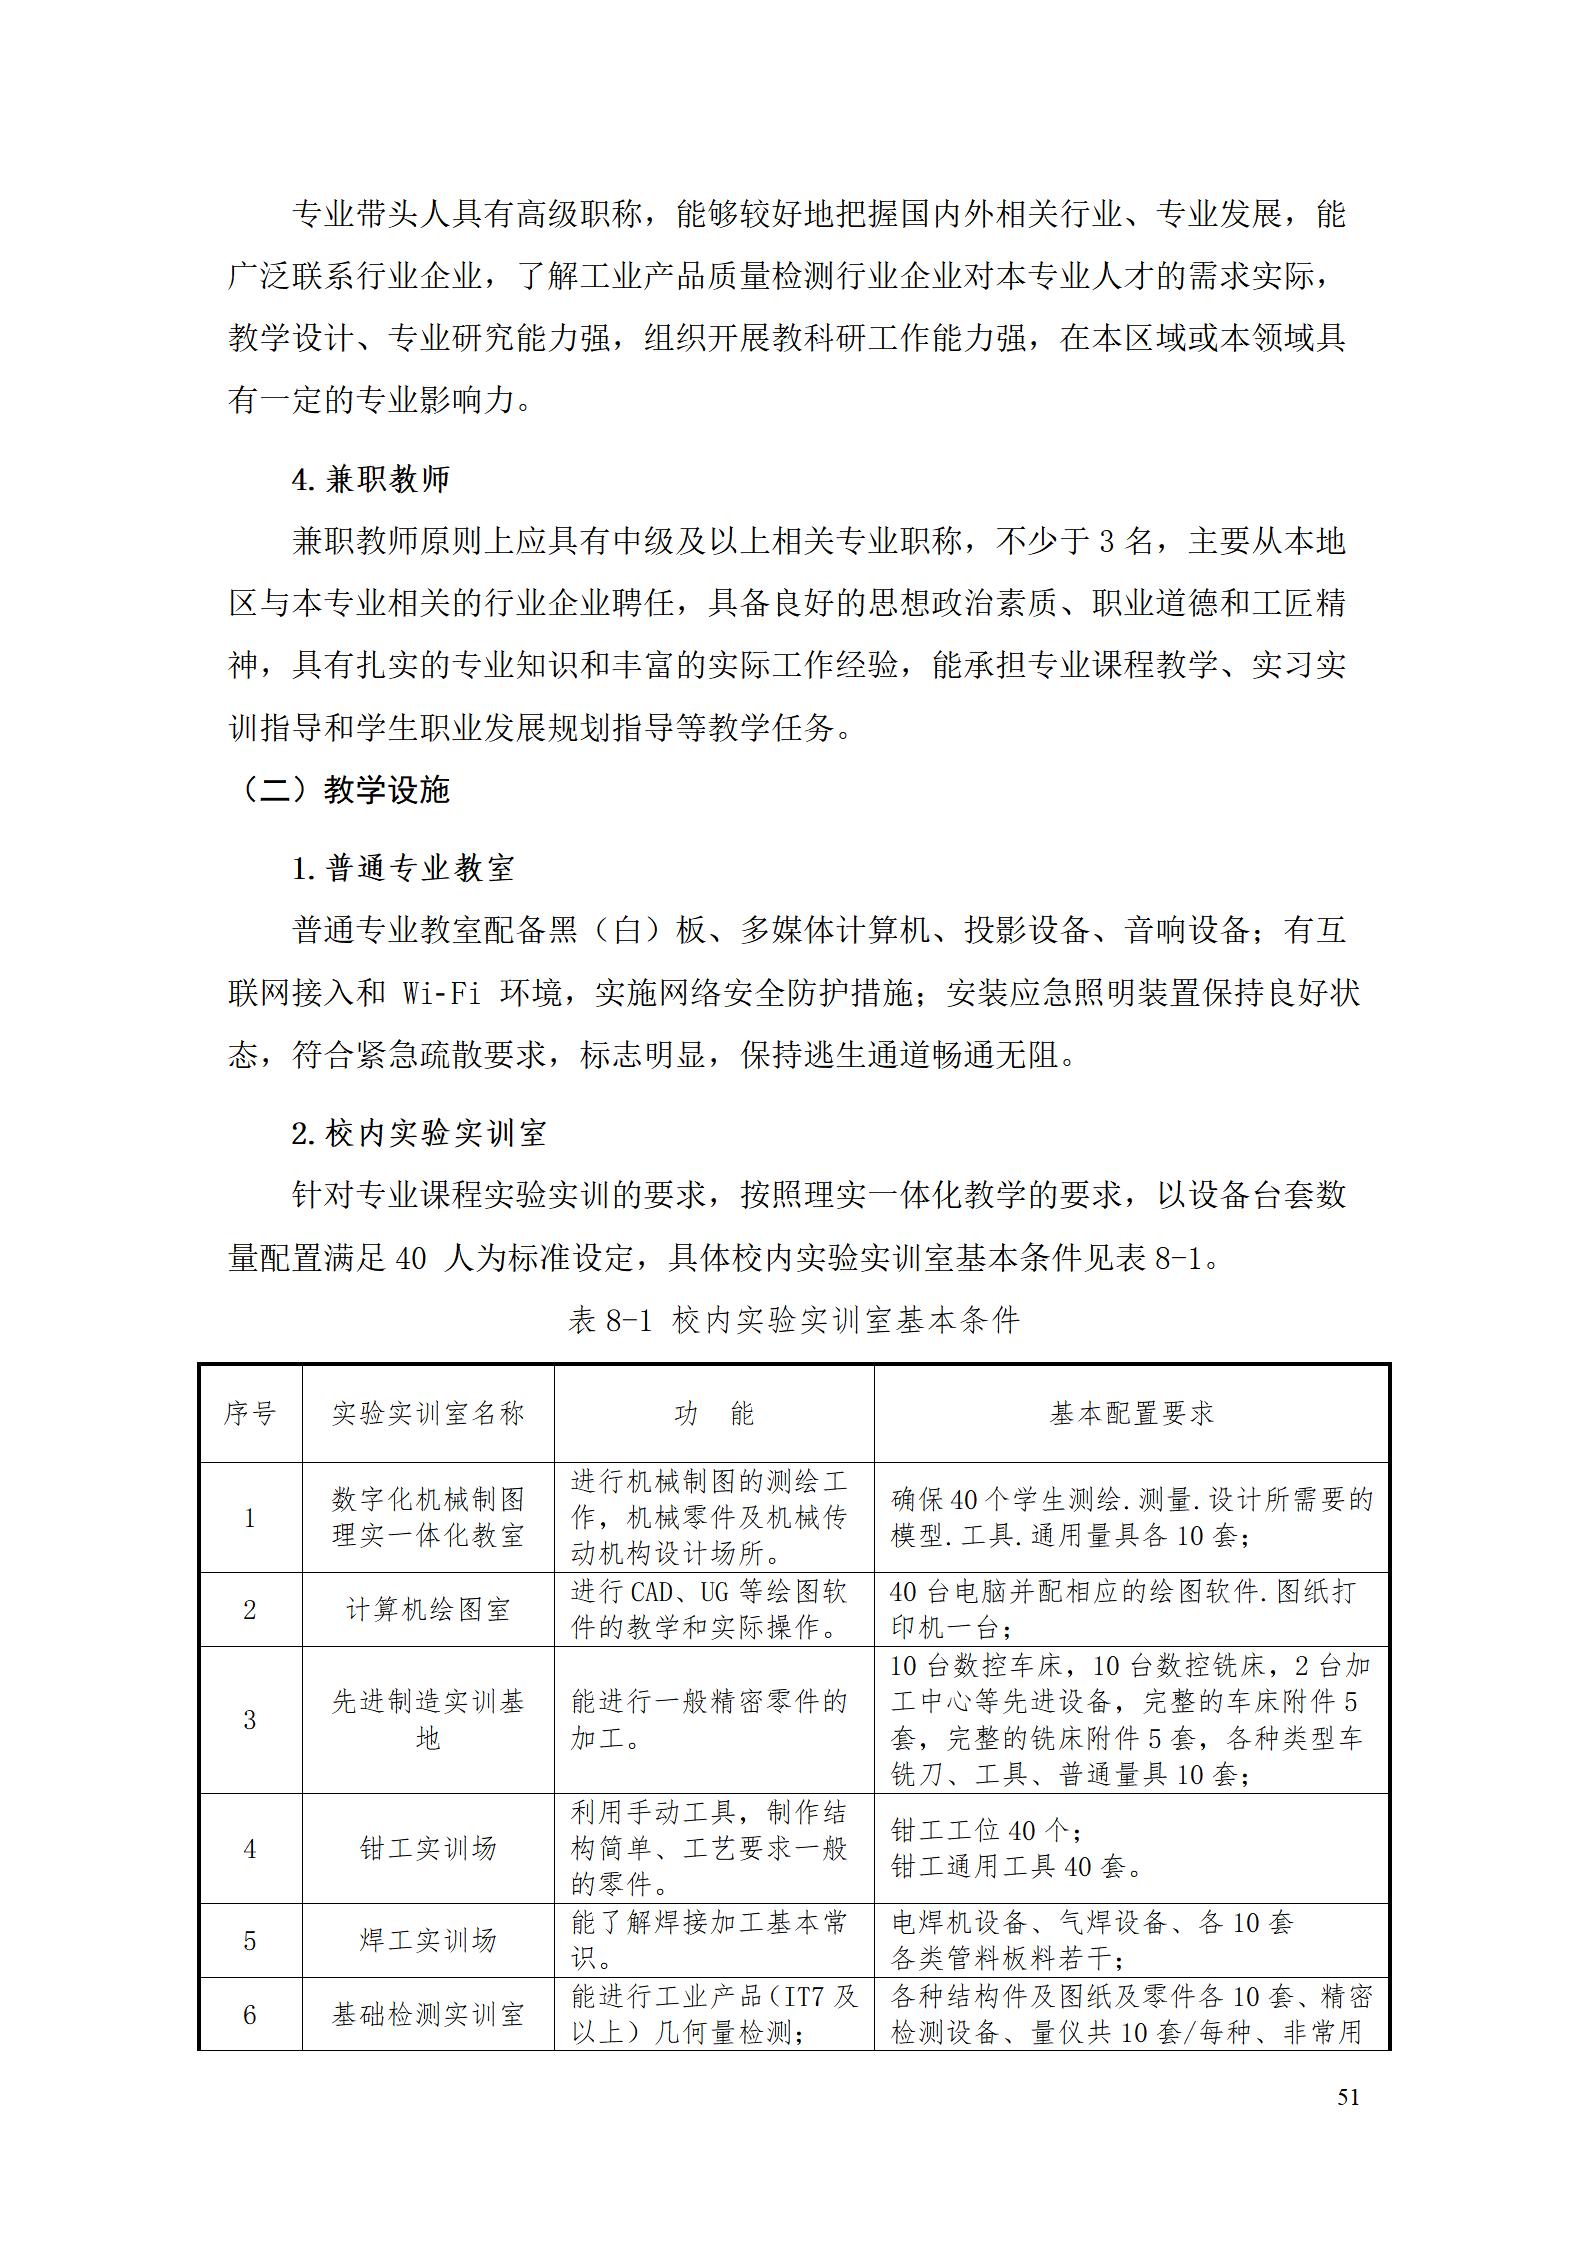 湖南机电职院2022级工业产品质量检测技术专业人才培养方案9.5_53.jpg